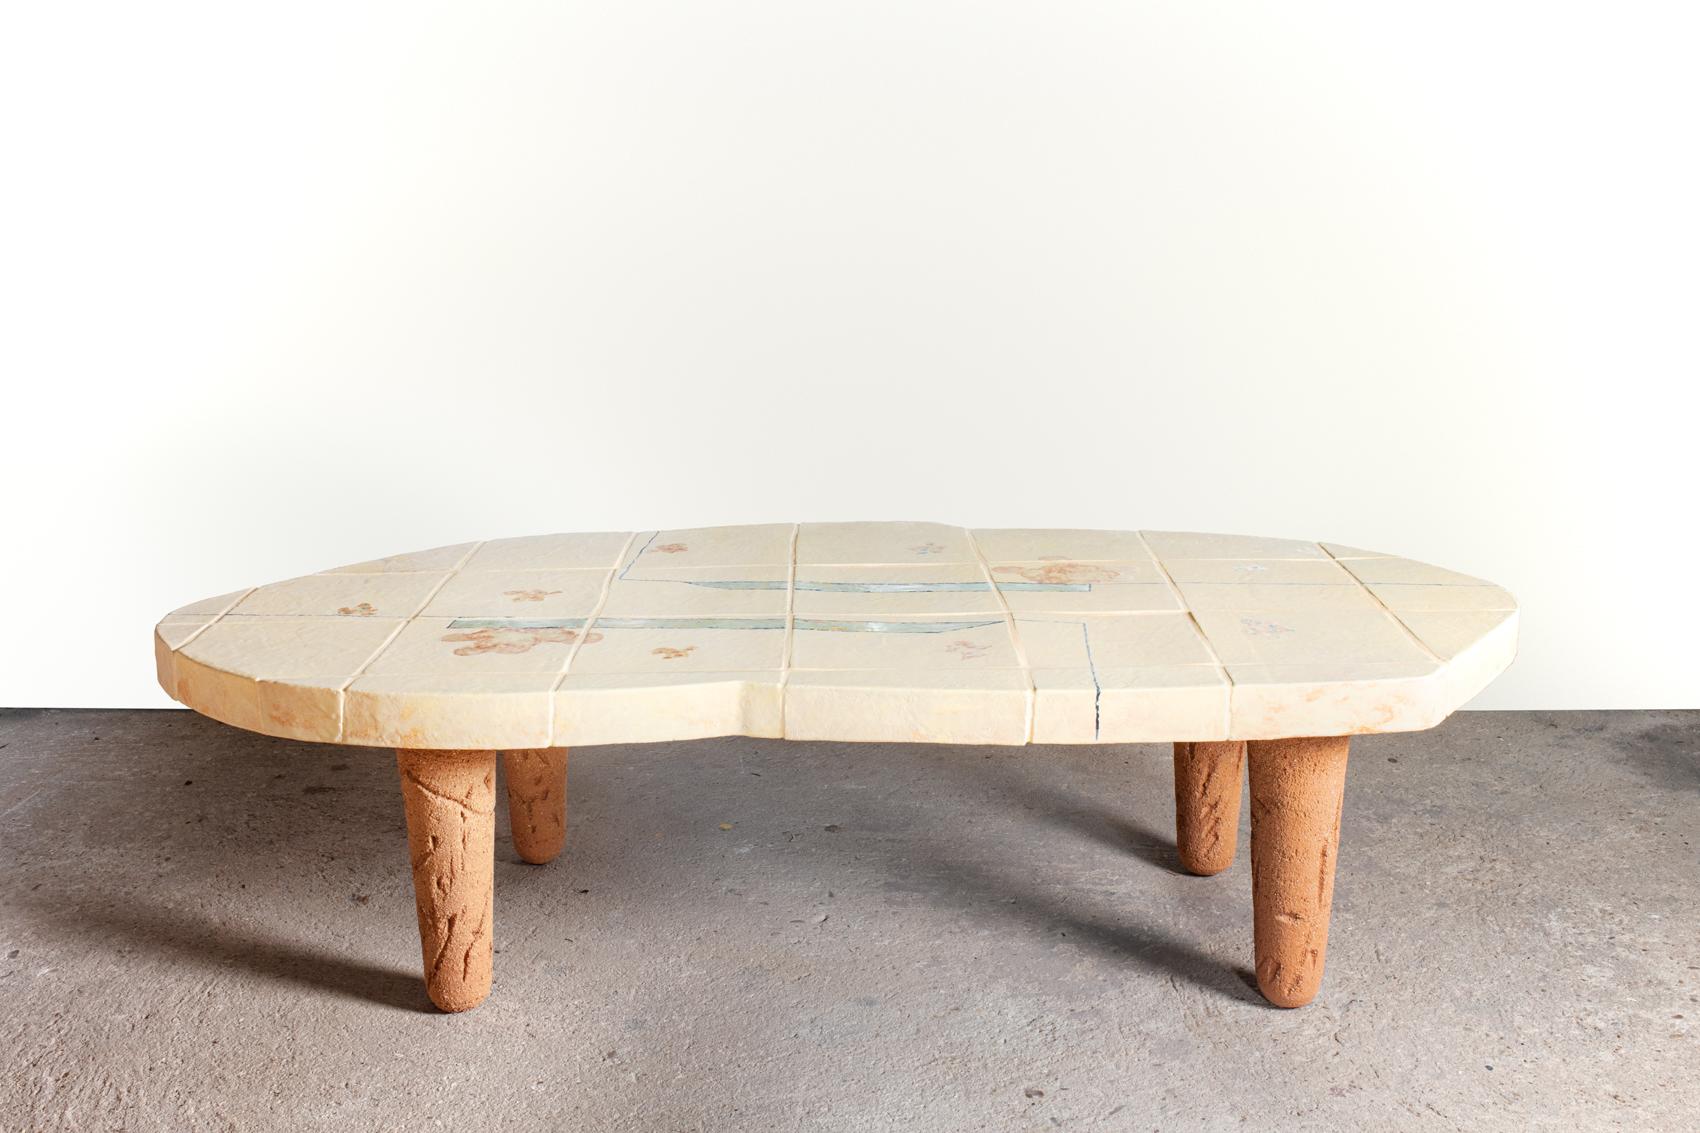 Table basse en céramique à décor de glaçure abstraite de Jean-Pierre Viot.
Pièce unique.
Signé.
Le dessus et les bases sont en céramique.
2023.
H : 13'8 x 24'8 x 52'4 pouces.